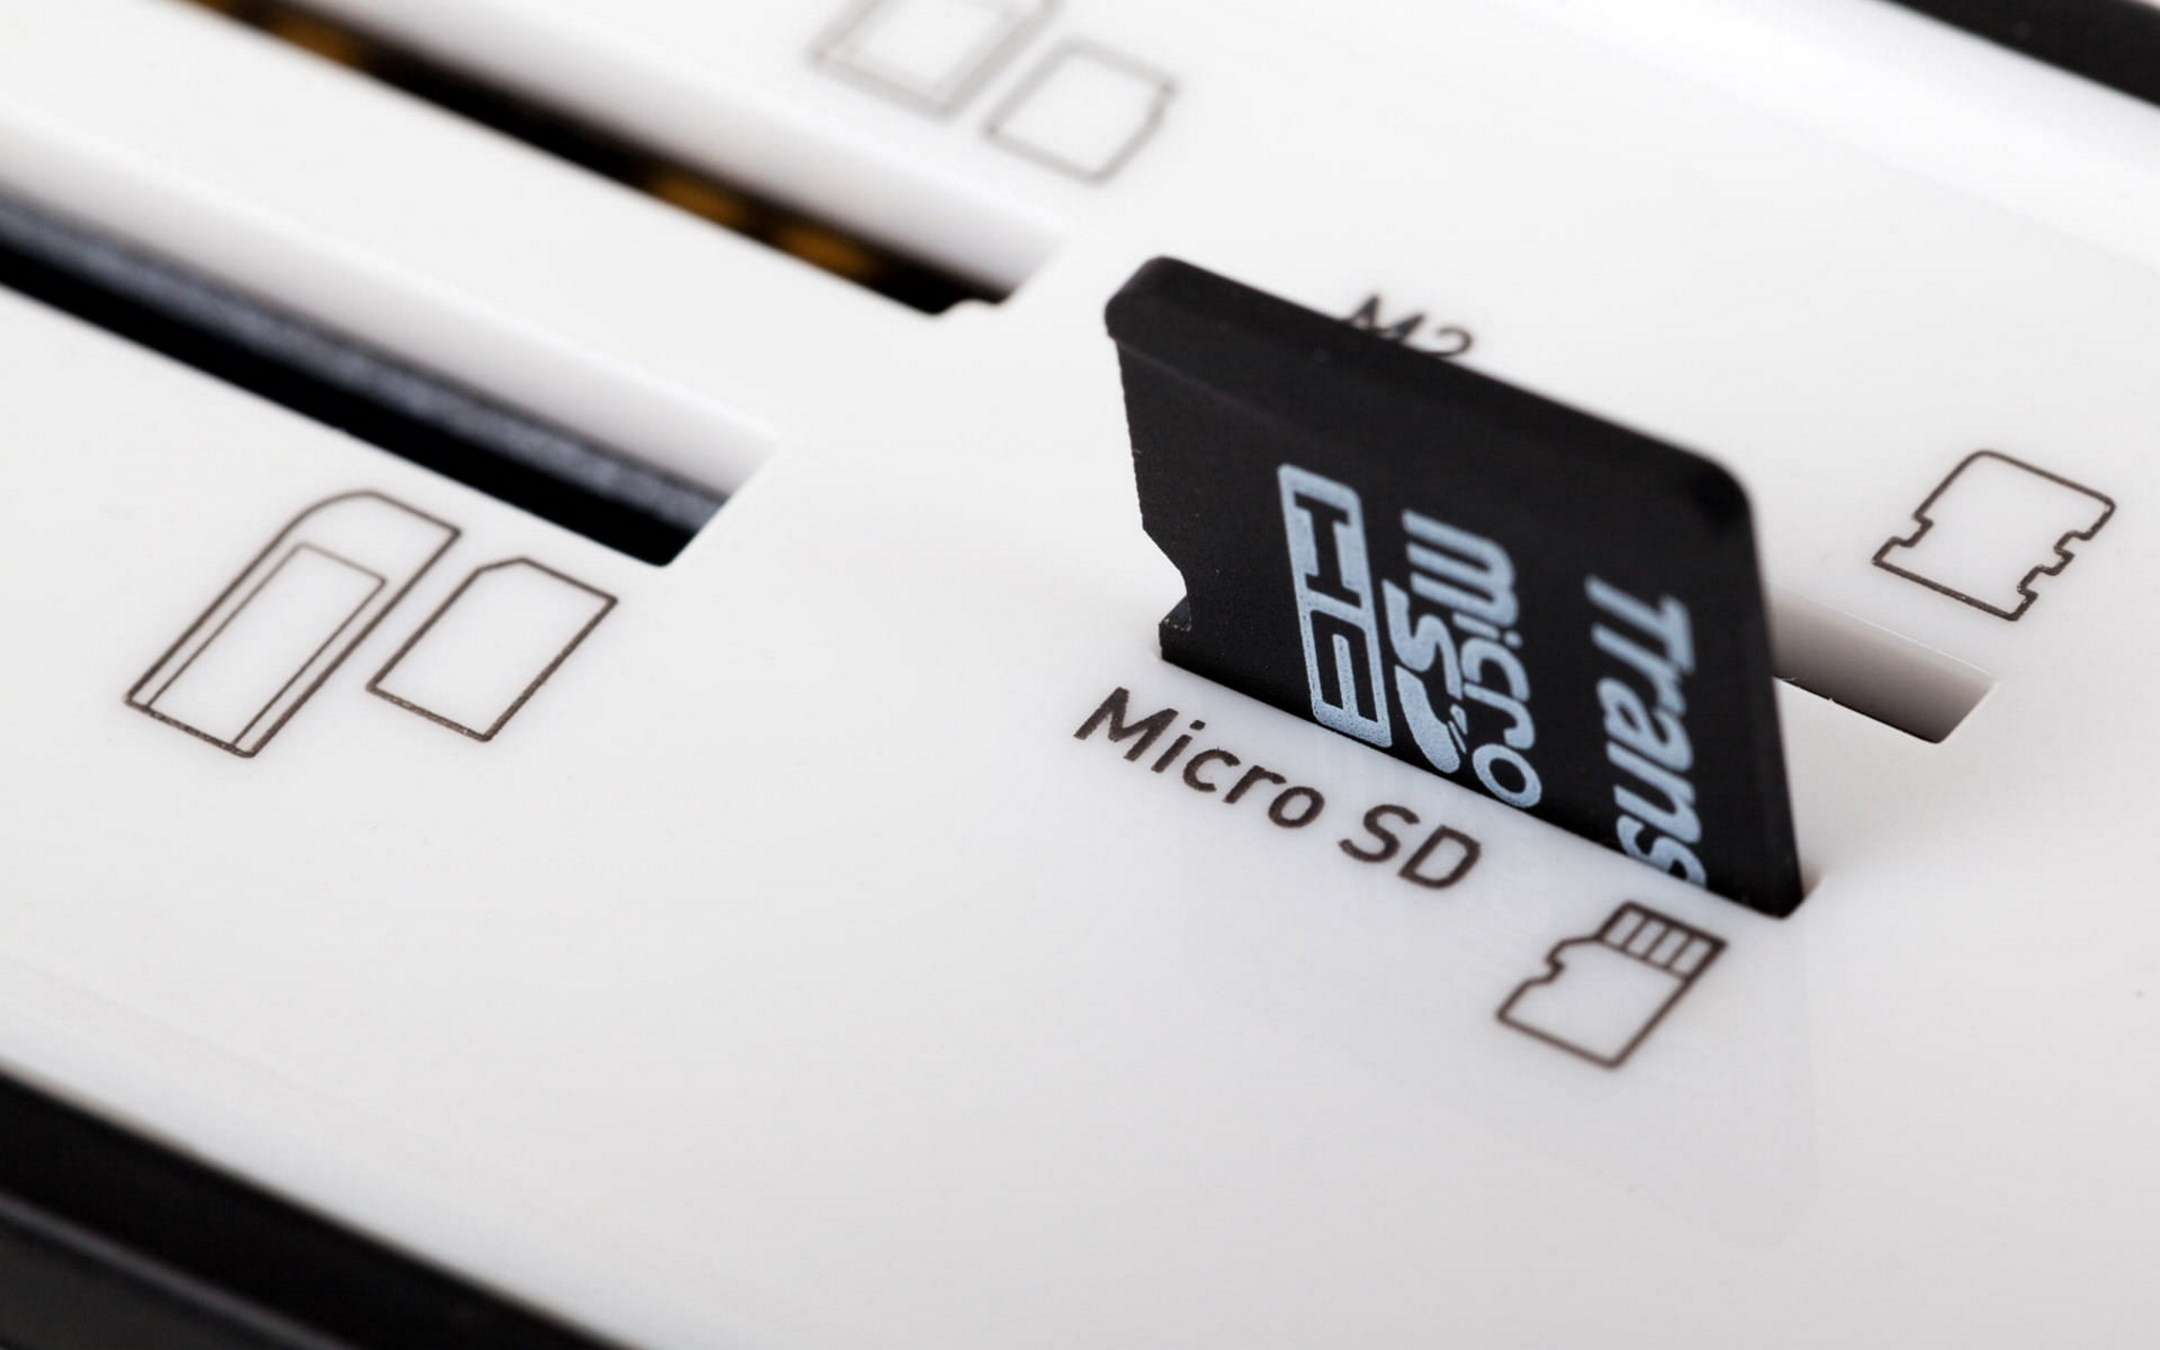 Migliori schede microSD: guida (prezzi e classifica)